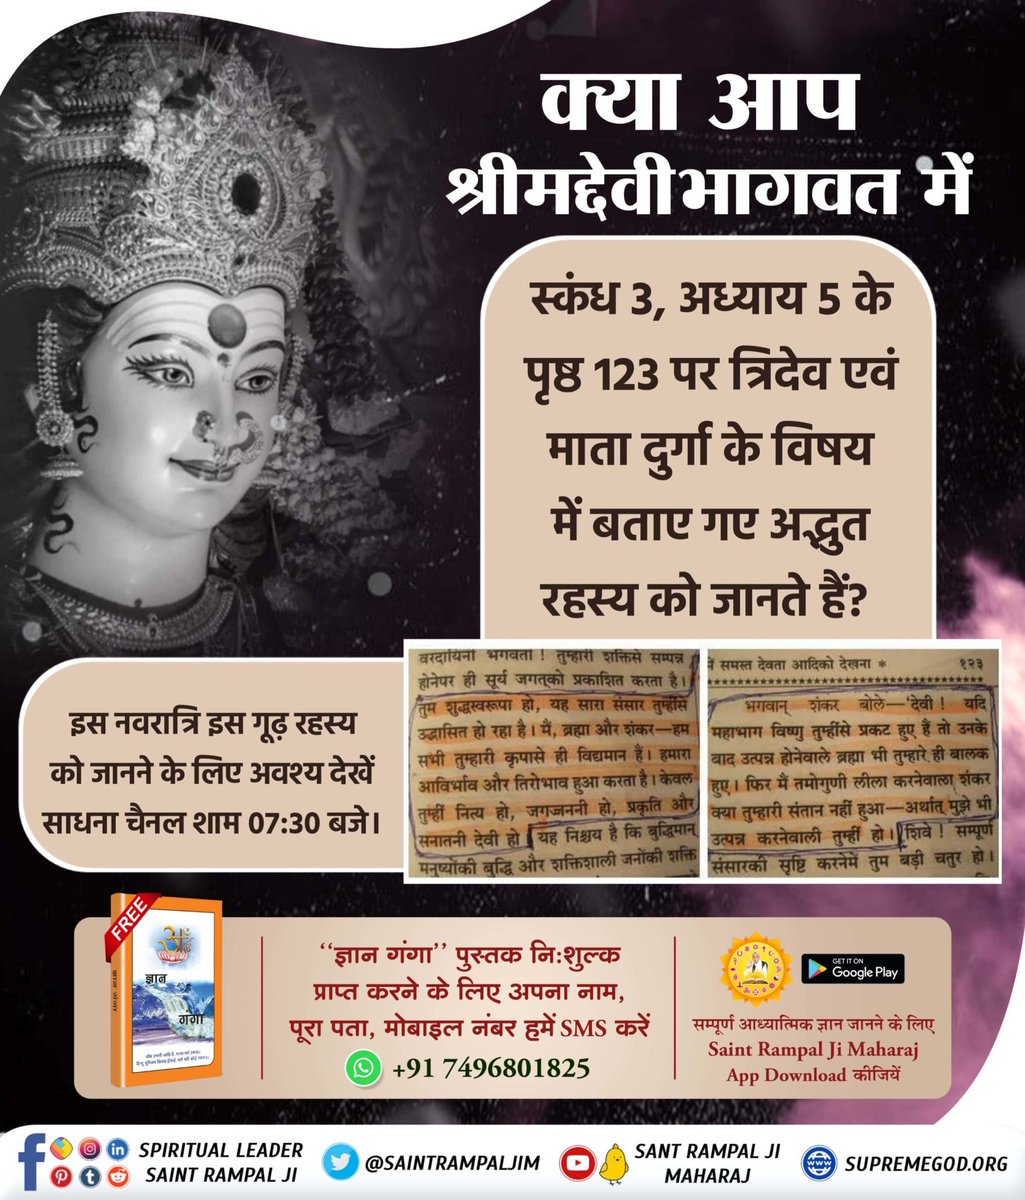 इस नवरात्रि पर अवश्य जानिये माता दुर्गा को प्रसन्न करने का मूल मंत्र कौनसा है जिससे देवी साधक को मनचाहा लाभ देती है। #माँ_को_खुश_करनेकेलिए पढ़ें ज्ञान गंगा Satlok Ashram YouTube Channel #SantRampalJiMaharaj